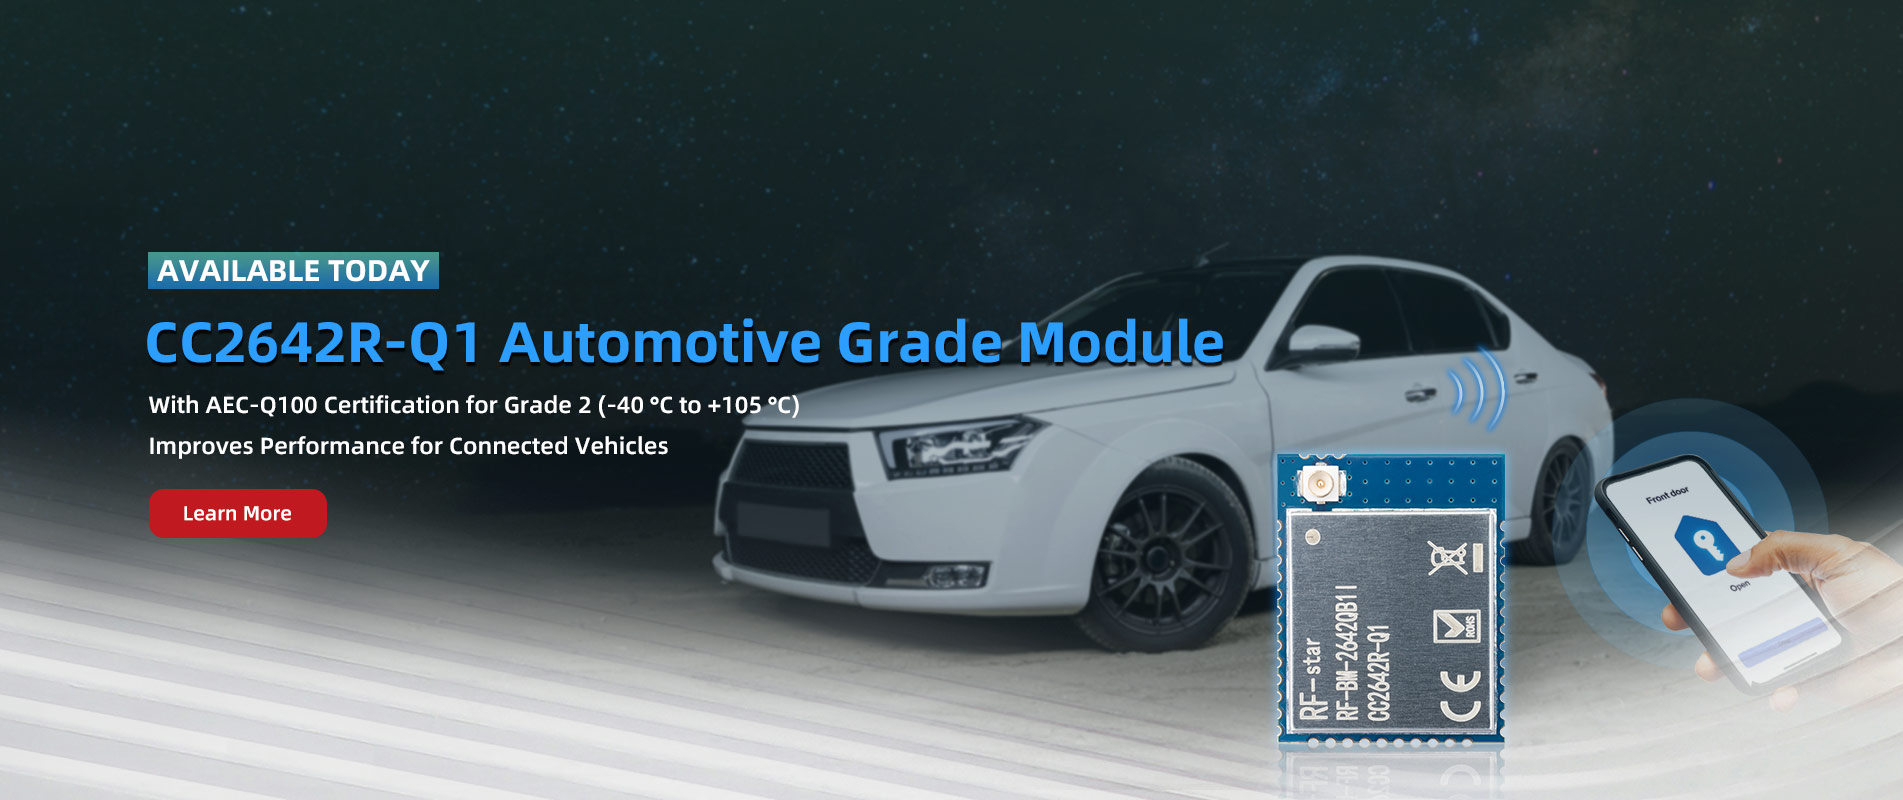 CC2642R-Q1 Automotive Grade Module